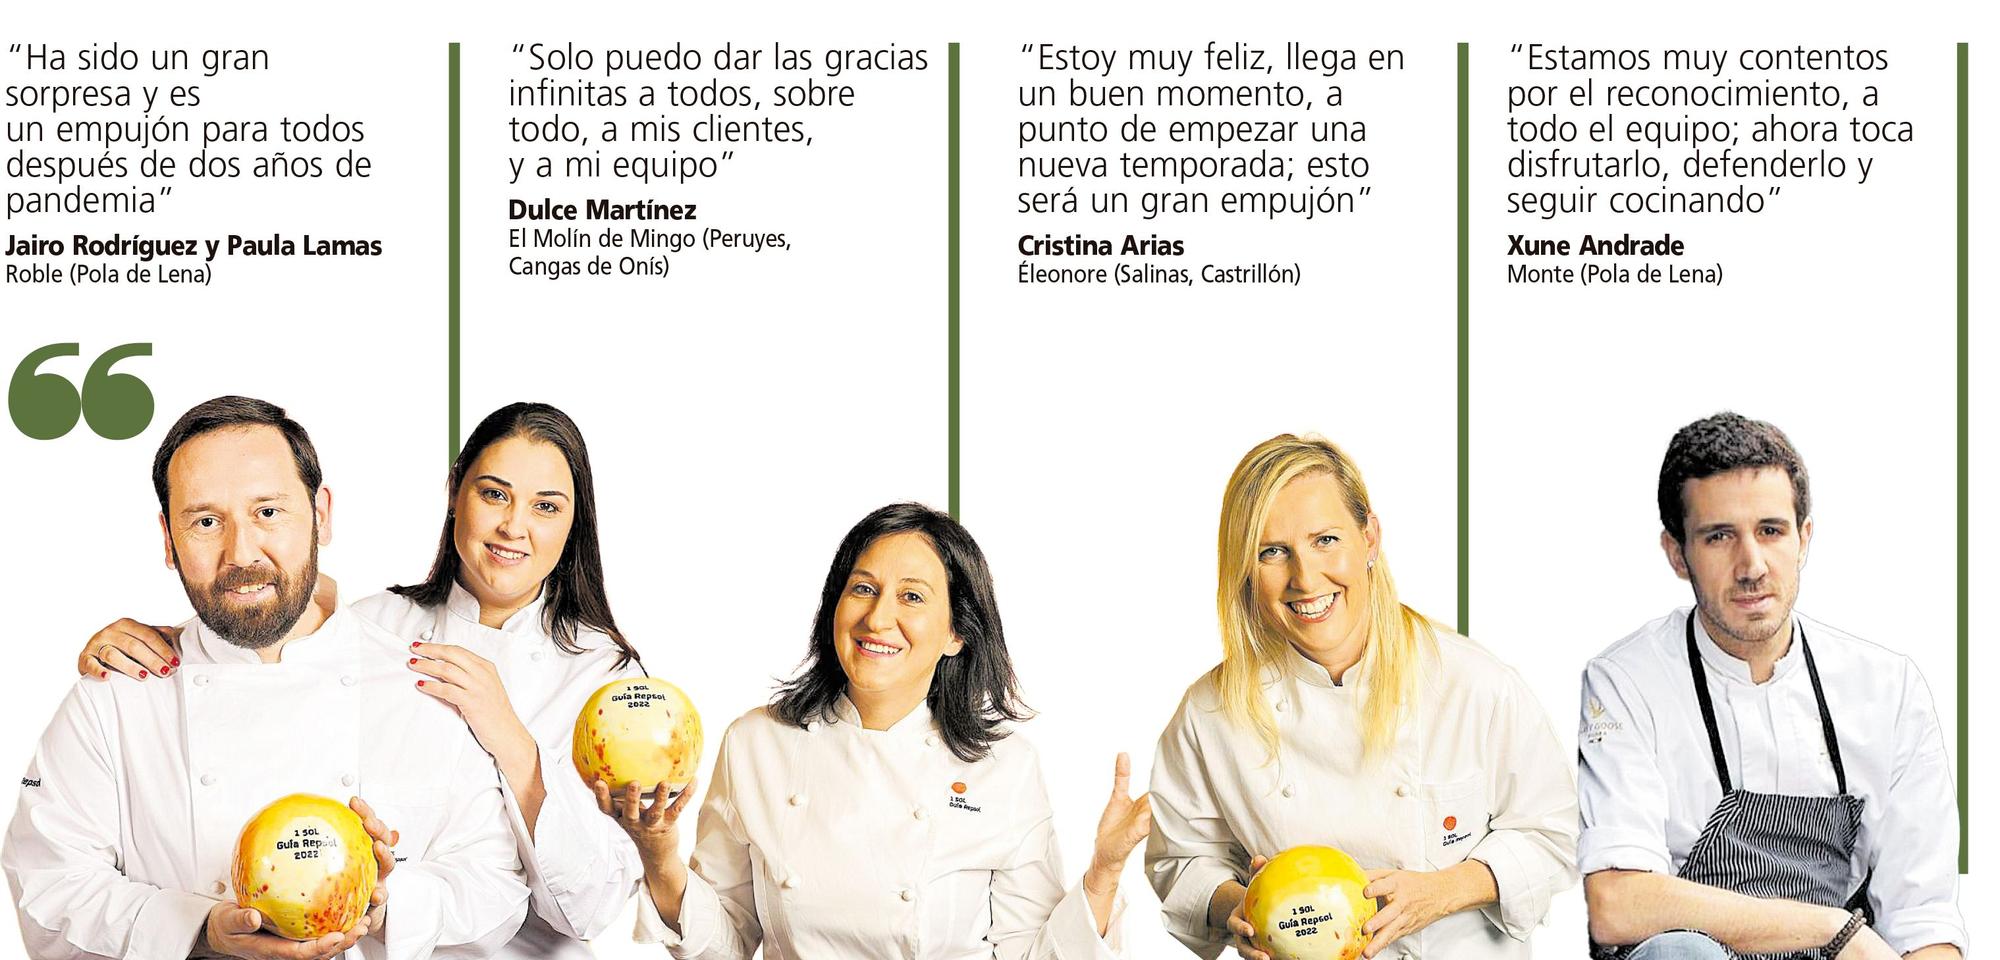 Repsol respalda la cocina asturiana con soles a Roble, Monte, Éleonore y El Molín